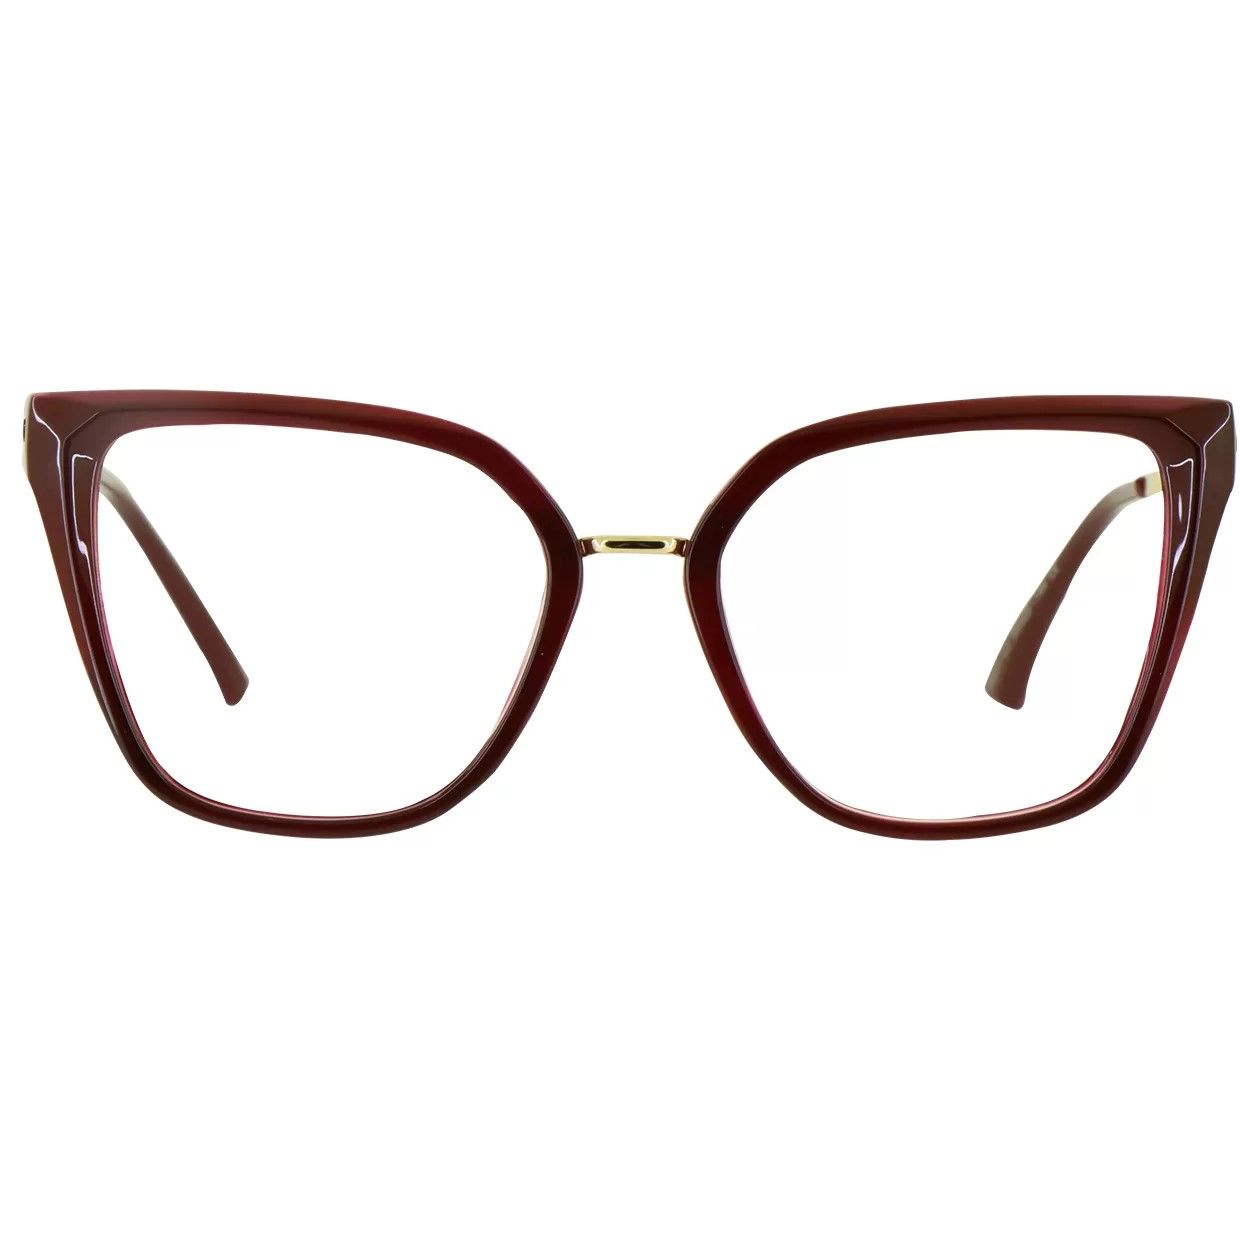 فریم عینک طبی گودلوک مدل 95301 -  - 1